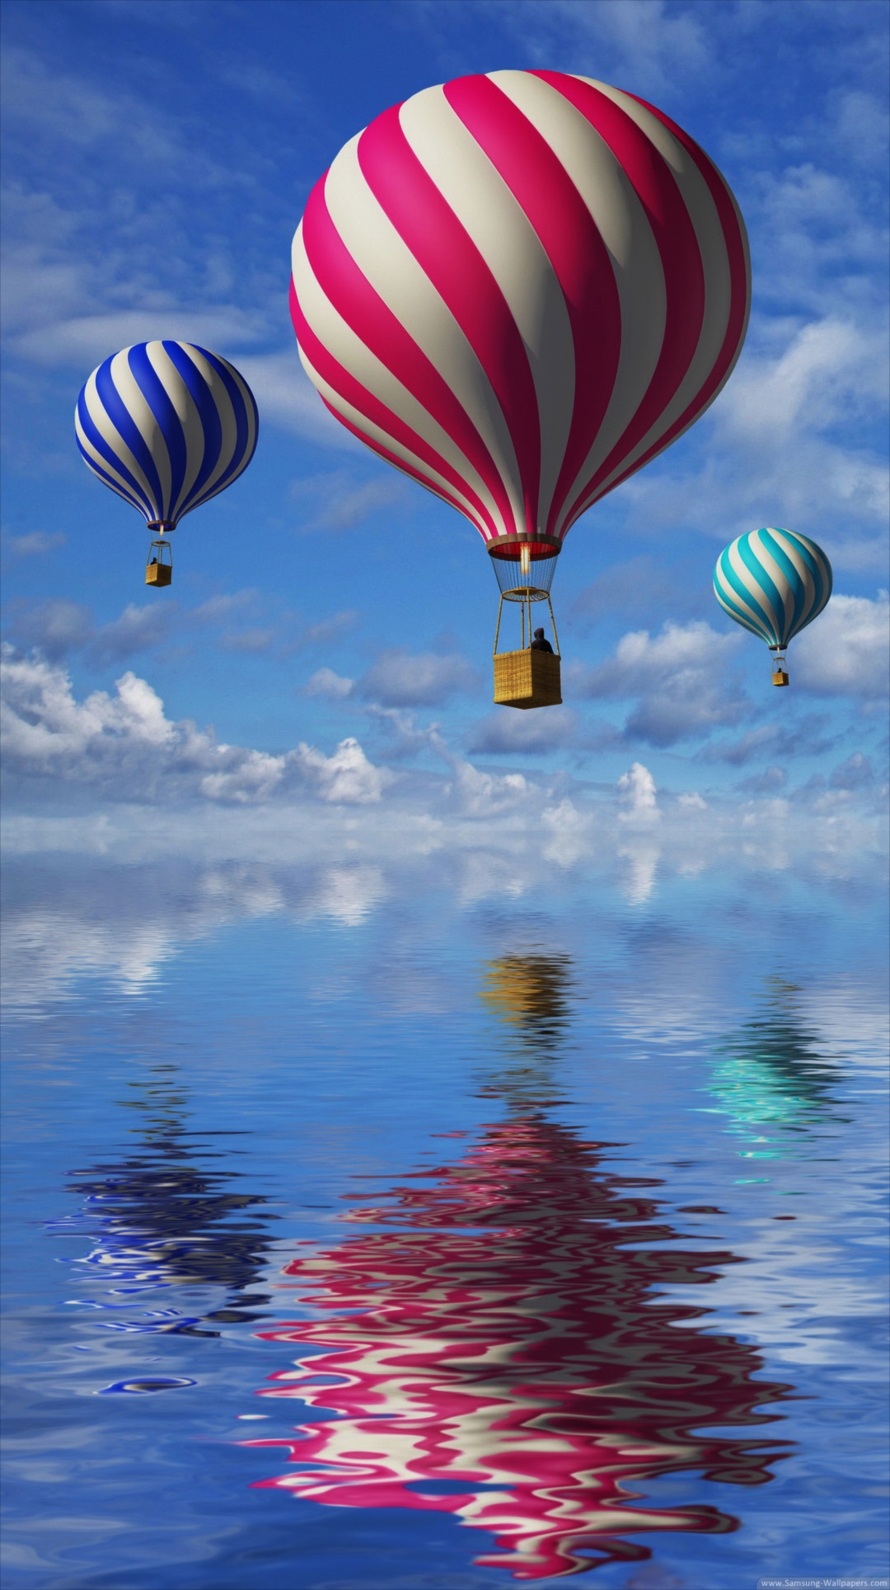 空飛ぶカラフルな気球 CG iPhone6壁紙